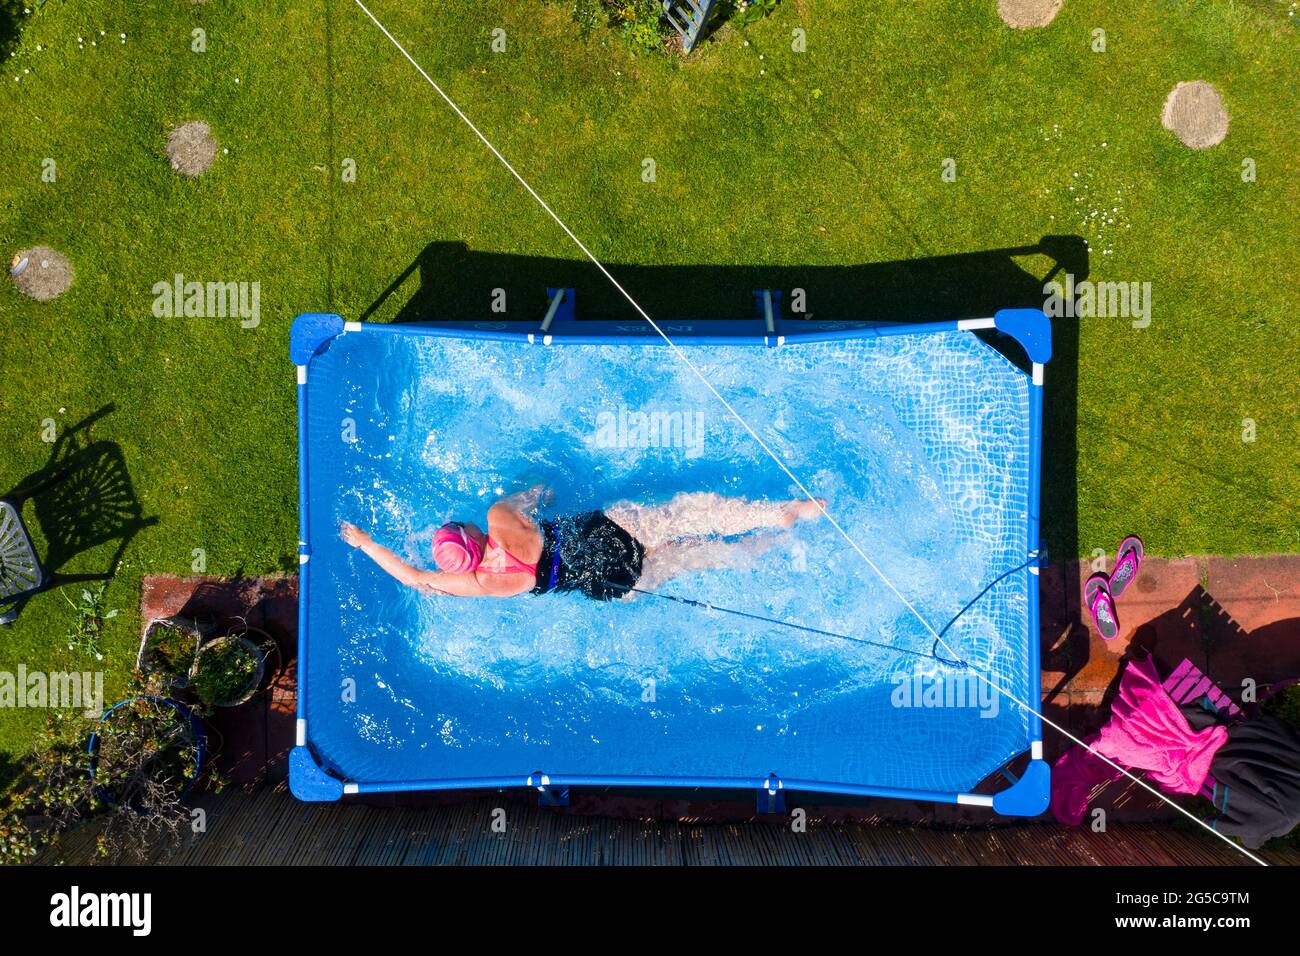 Fiona Philp aus Limekilns, Fife, eine wilde Freiwasserschwimmerin, während eines täglichen Schwimmens im Pool im Garten, Limekilns, Schottland, Großbritannien Stockfoto